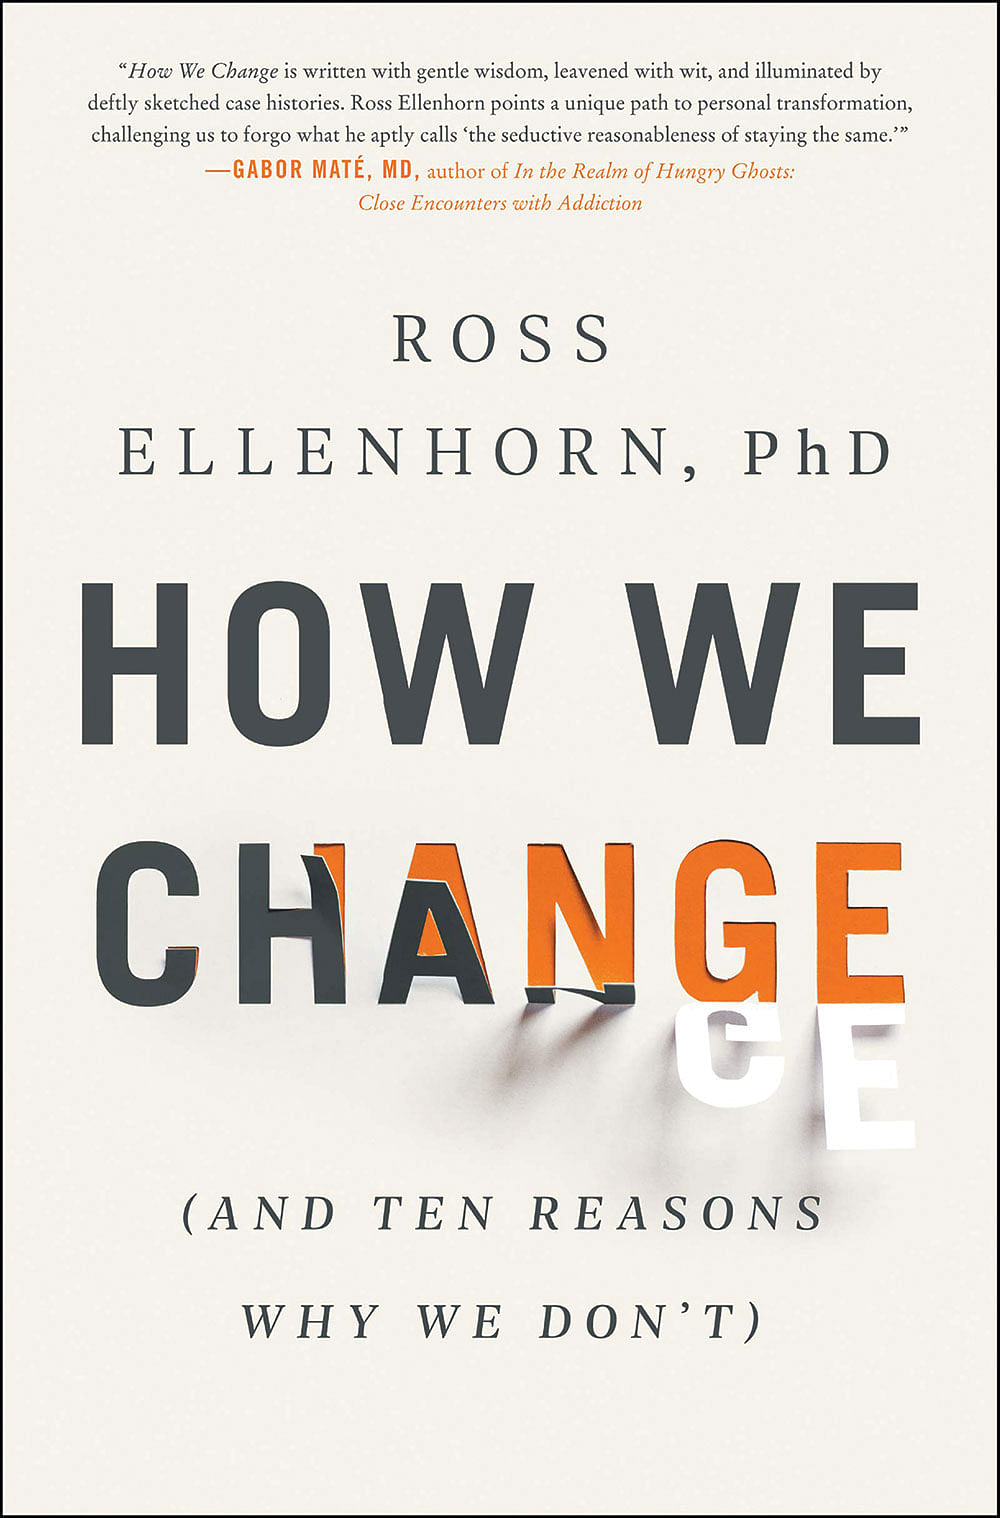 புத்தகத்தின் பெயர்:
  How We Change 
(and 10 Reasons Why We Don’t) 
ஆசிரியர்:
Dr Ross Ellenhorn
பதிப்பாளர்:
Piatku